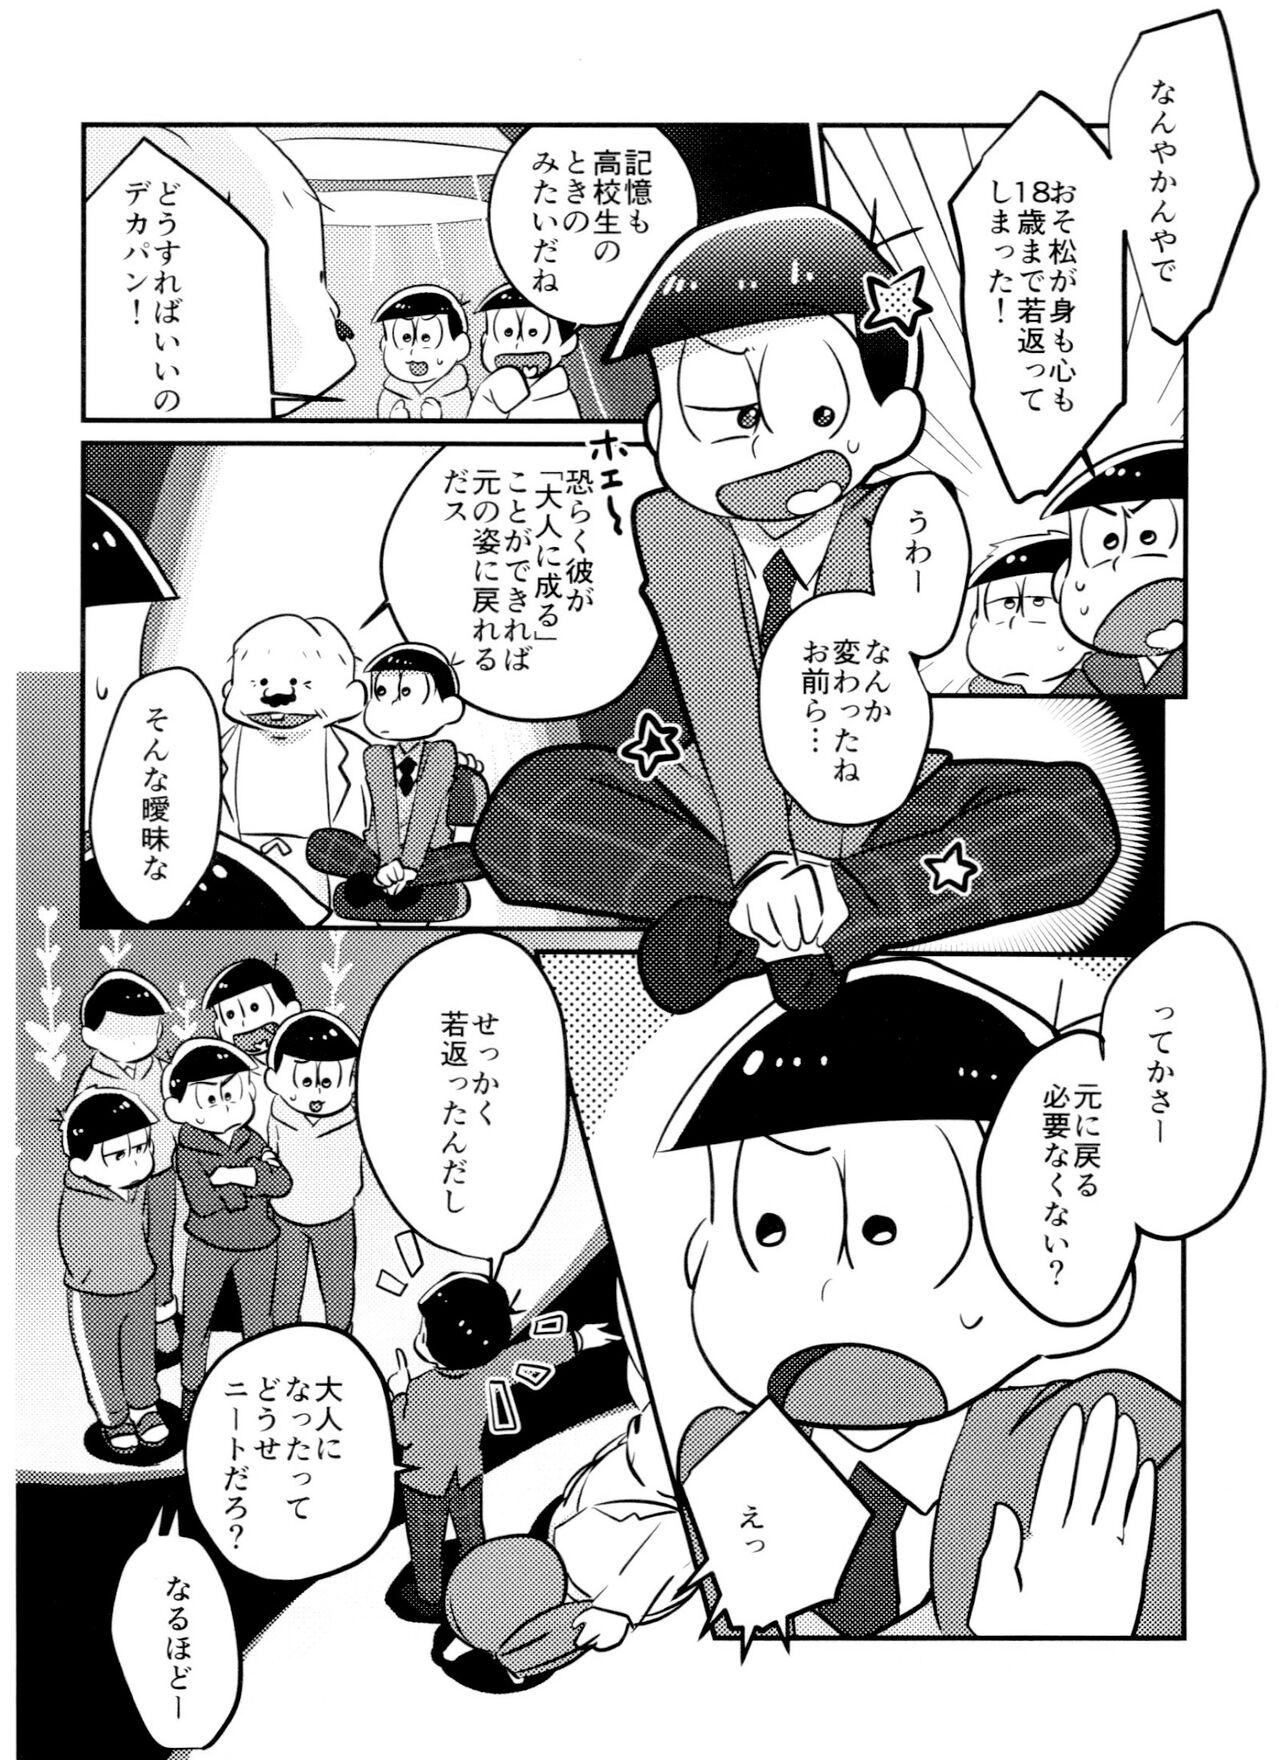 Vergon Kimi wa itsu kara otonana no!? - Osomatsu-san Cousin - Page 3